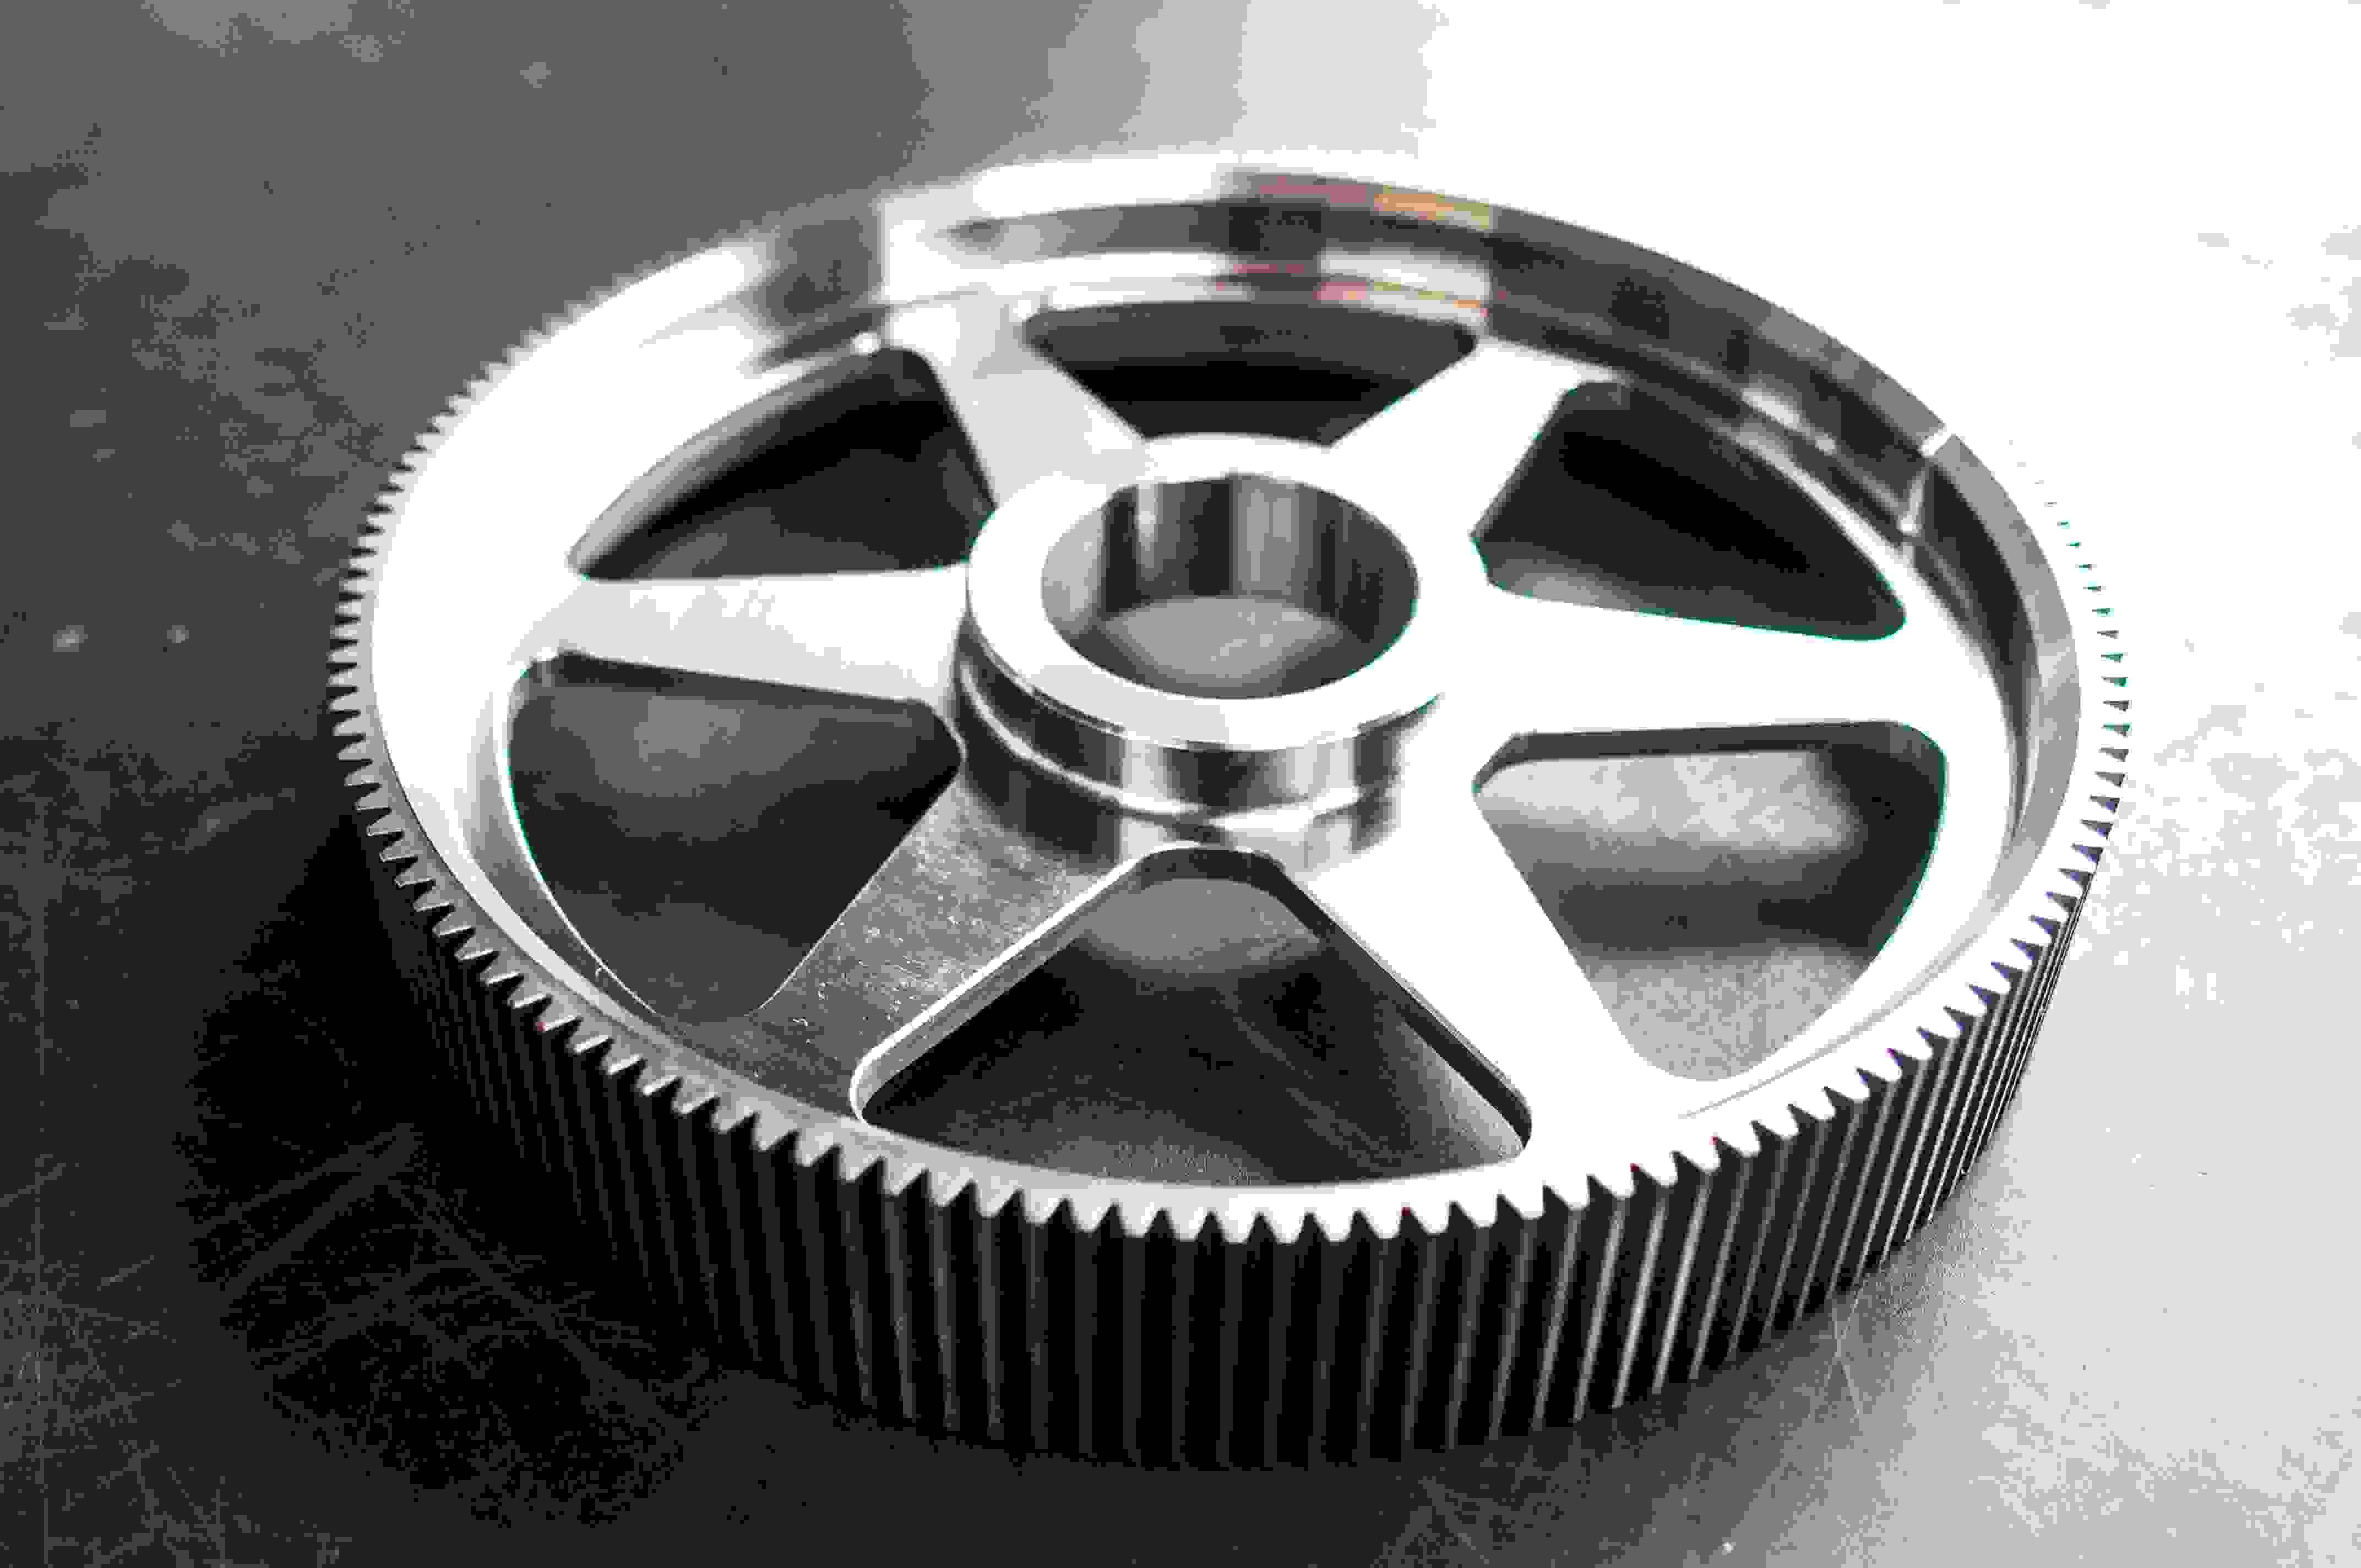 Large gearwheel